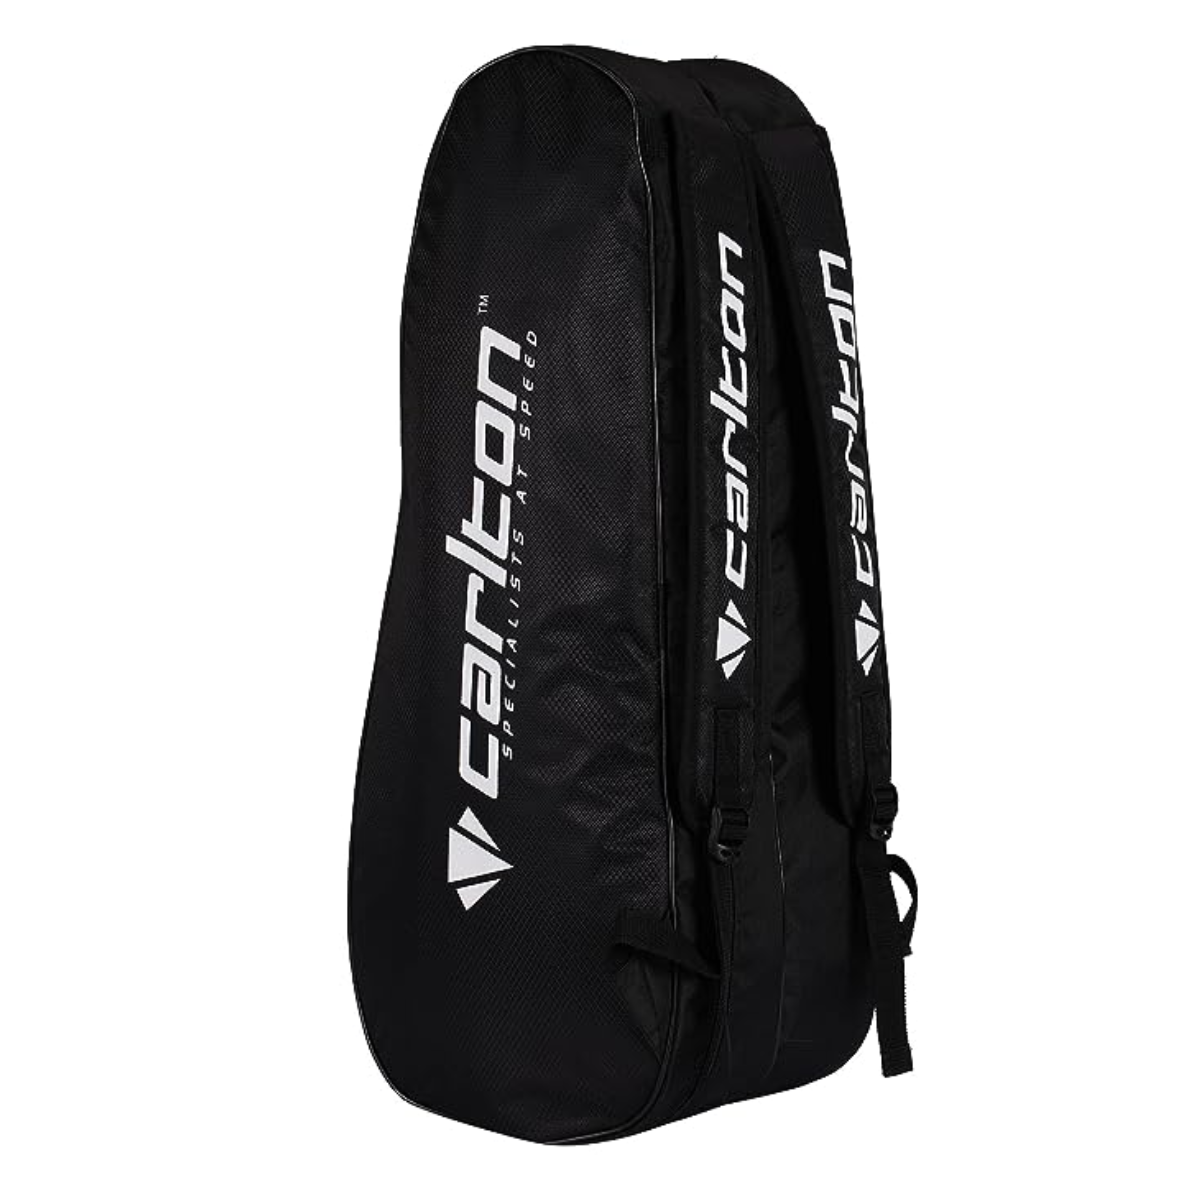 Carlton Vapour Trial 2 Compartment Badminton Kit Bag (Black/Blue)